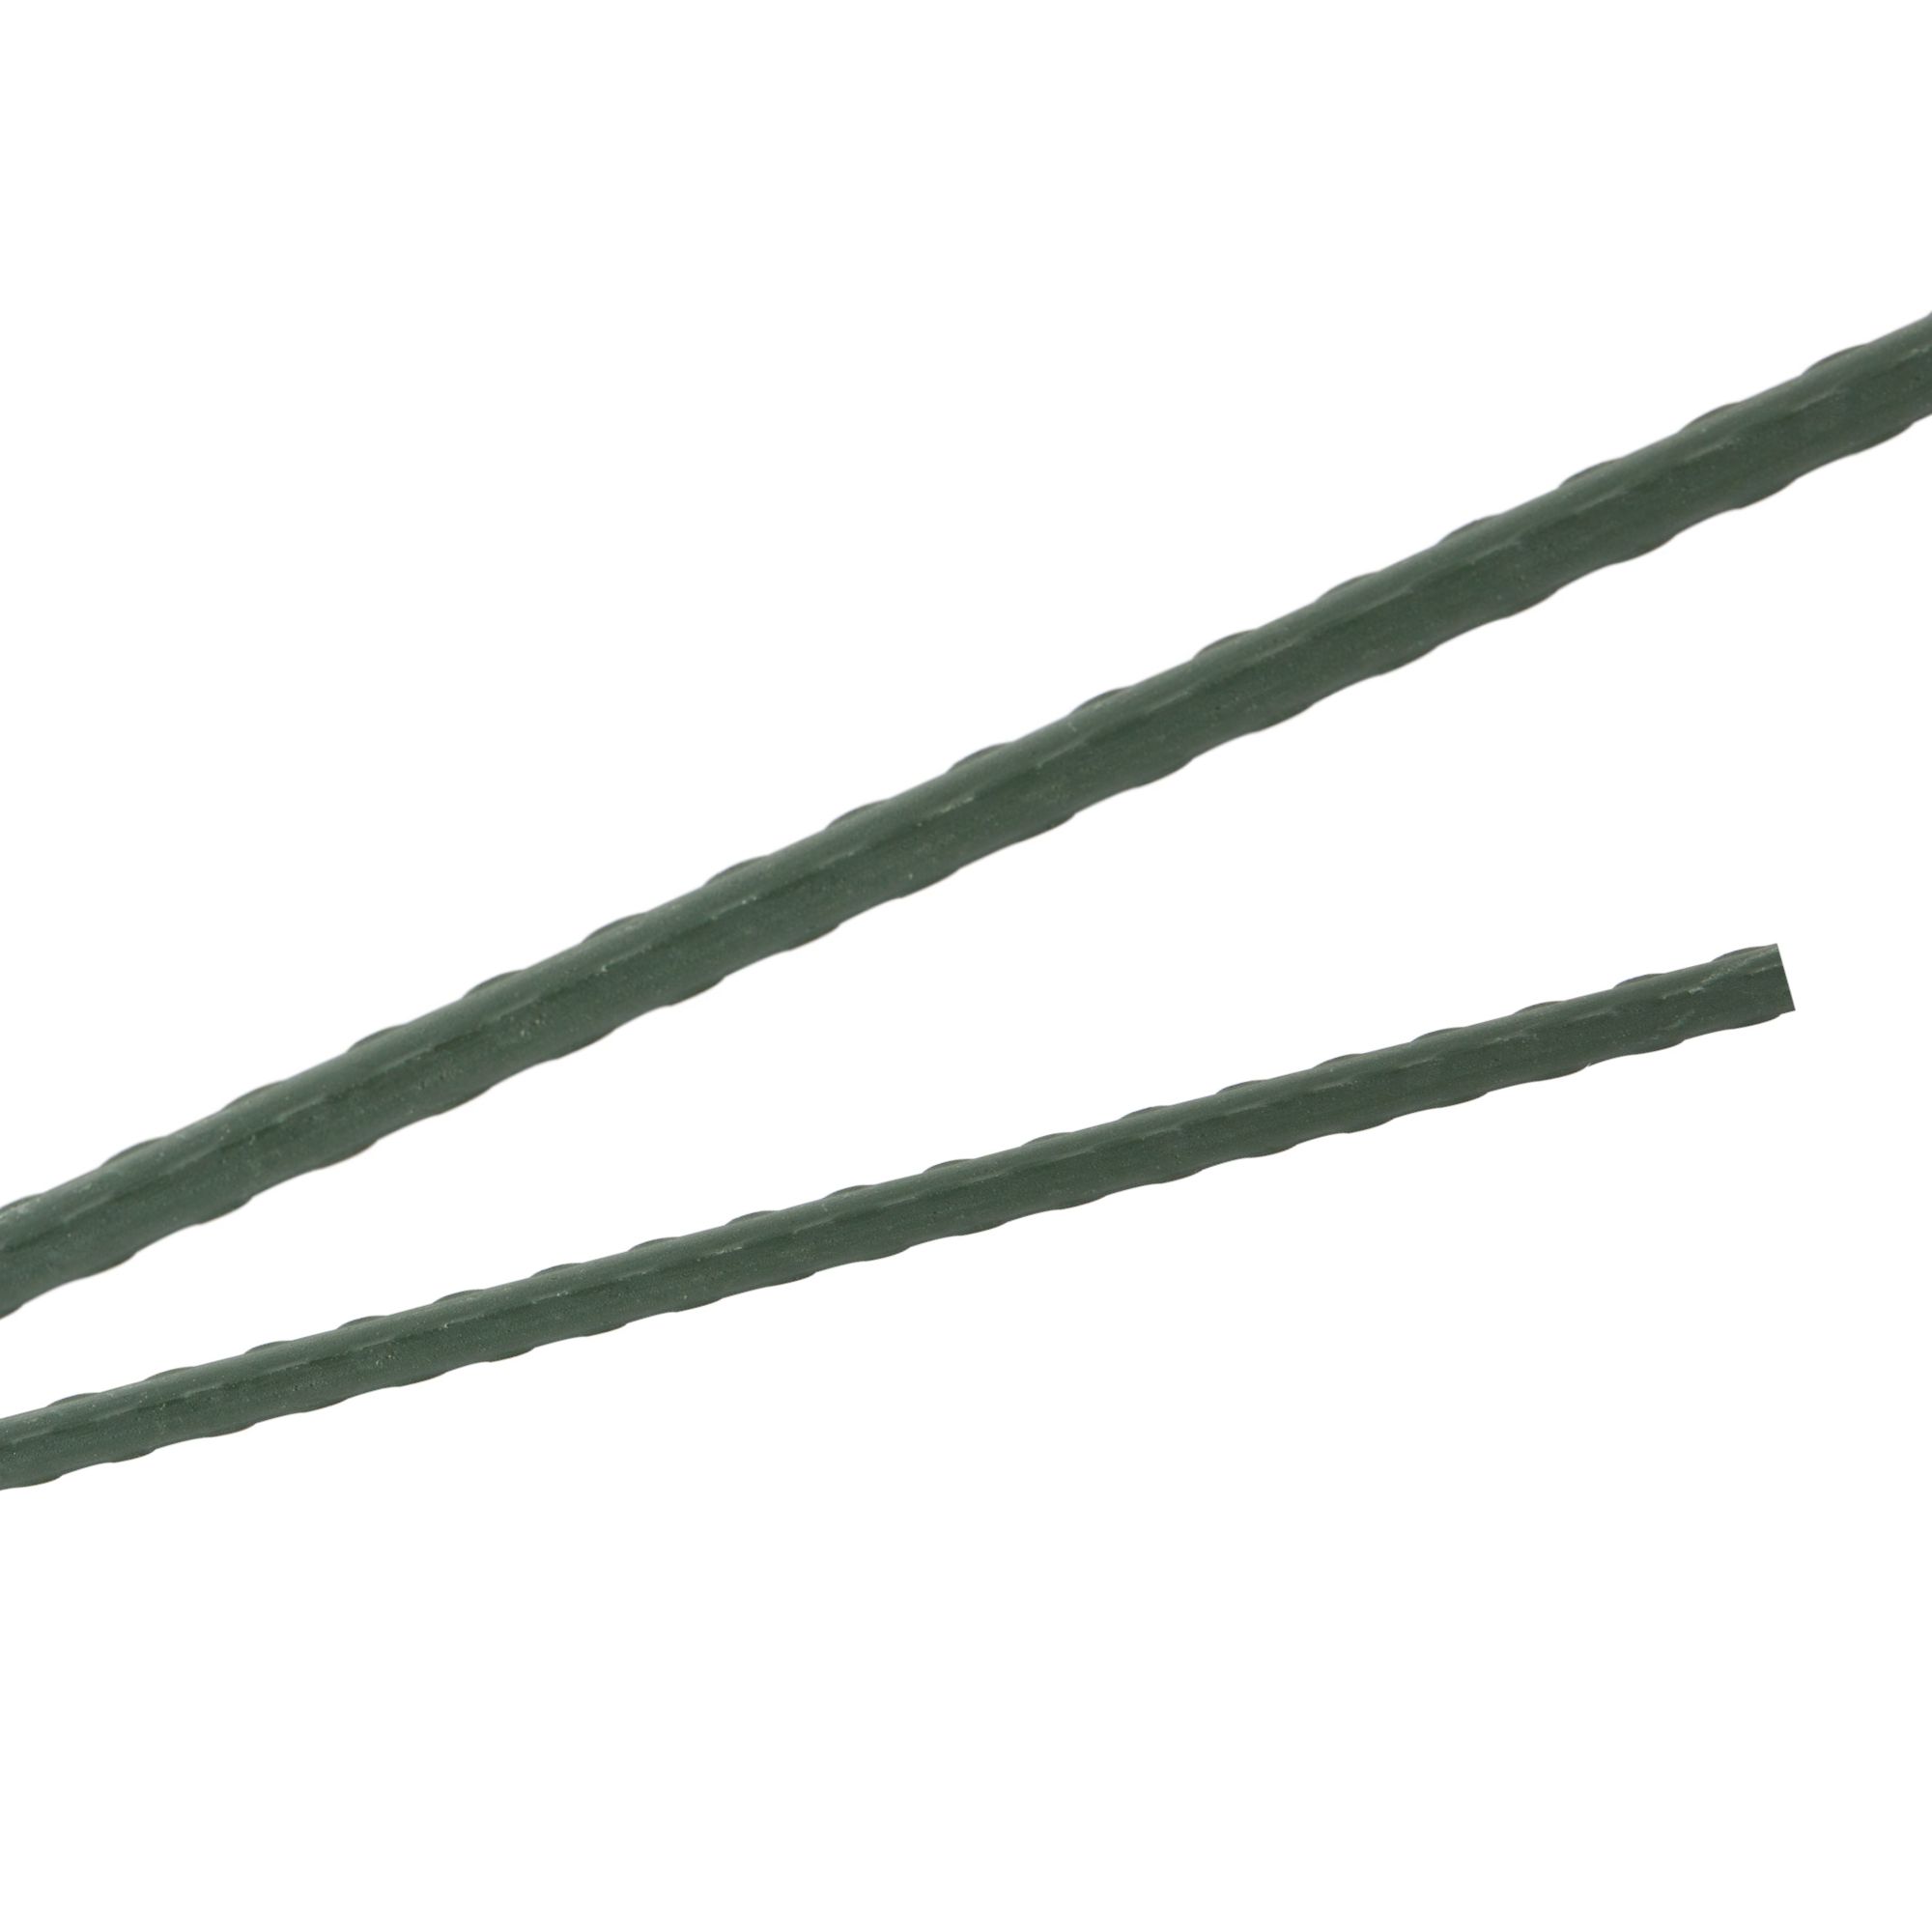 Tyč podpěrná, 8mm, 120cm, kov+PVC, zelená 0.072000 Kg GIGA Sklad20 211787 115